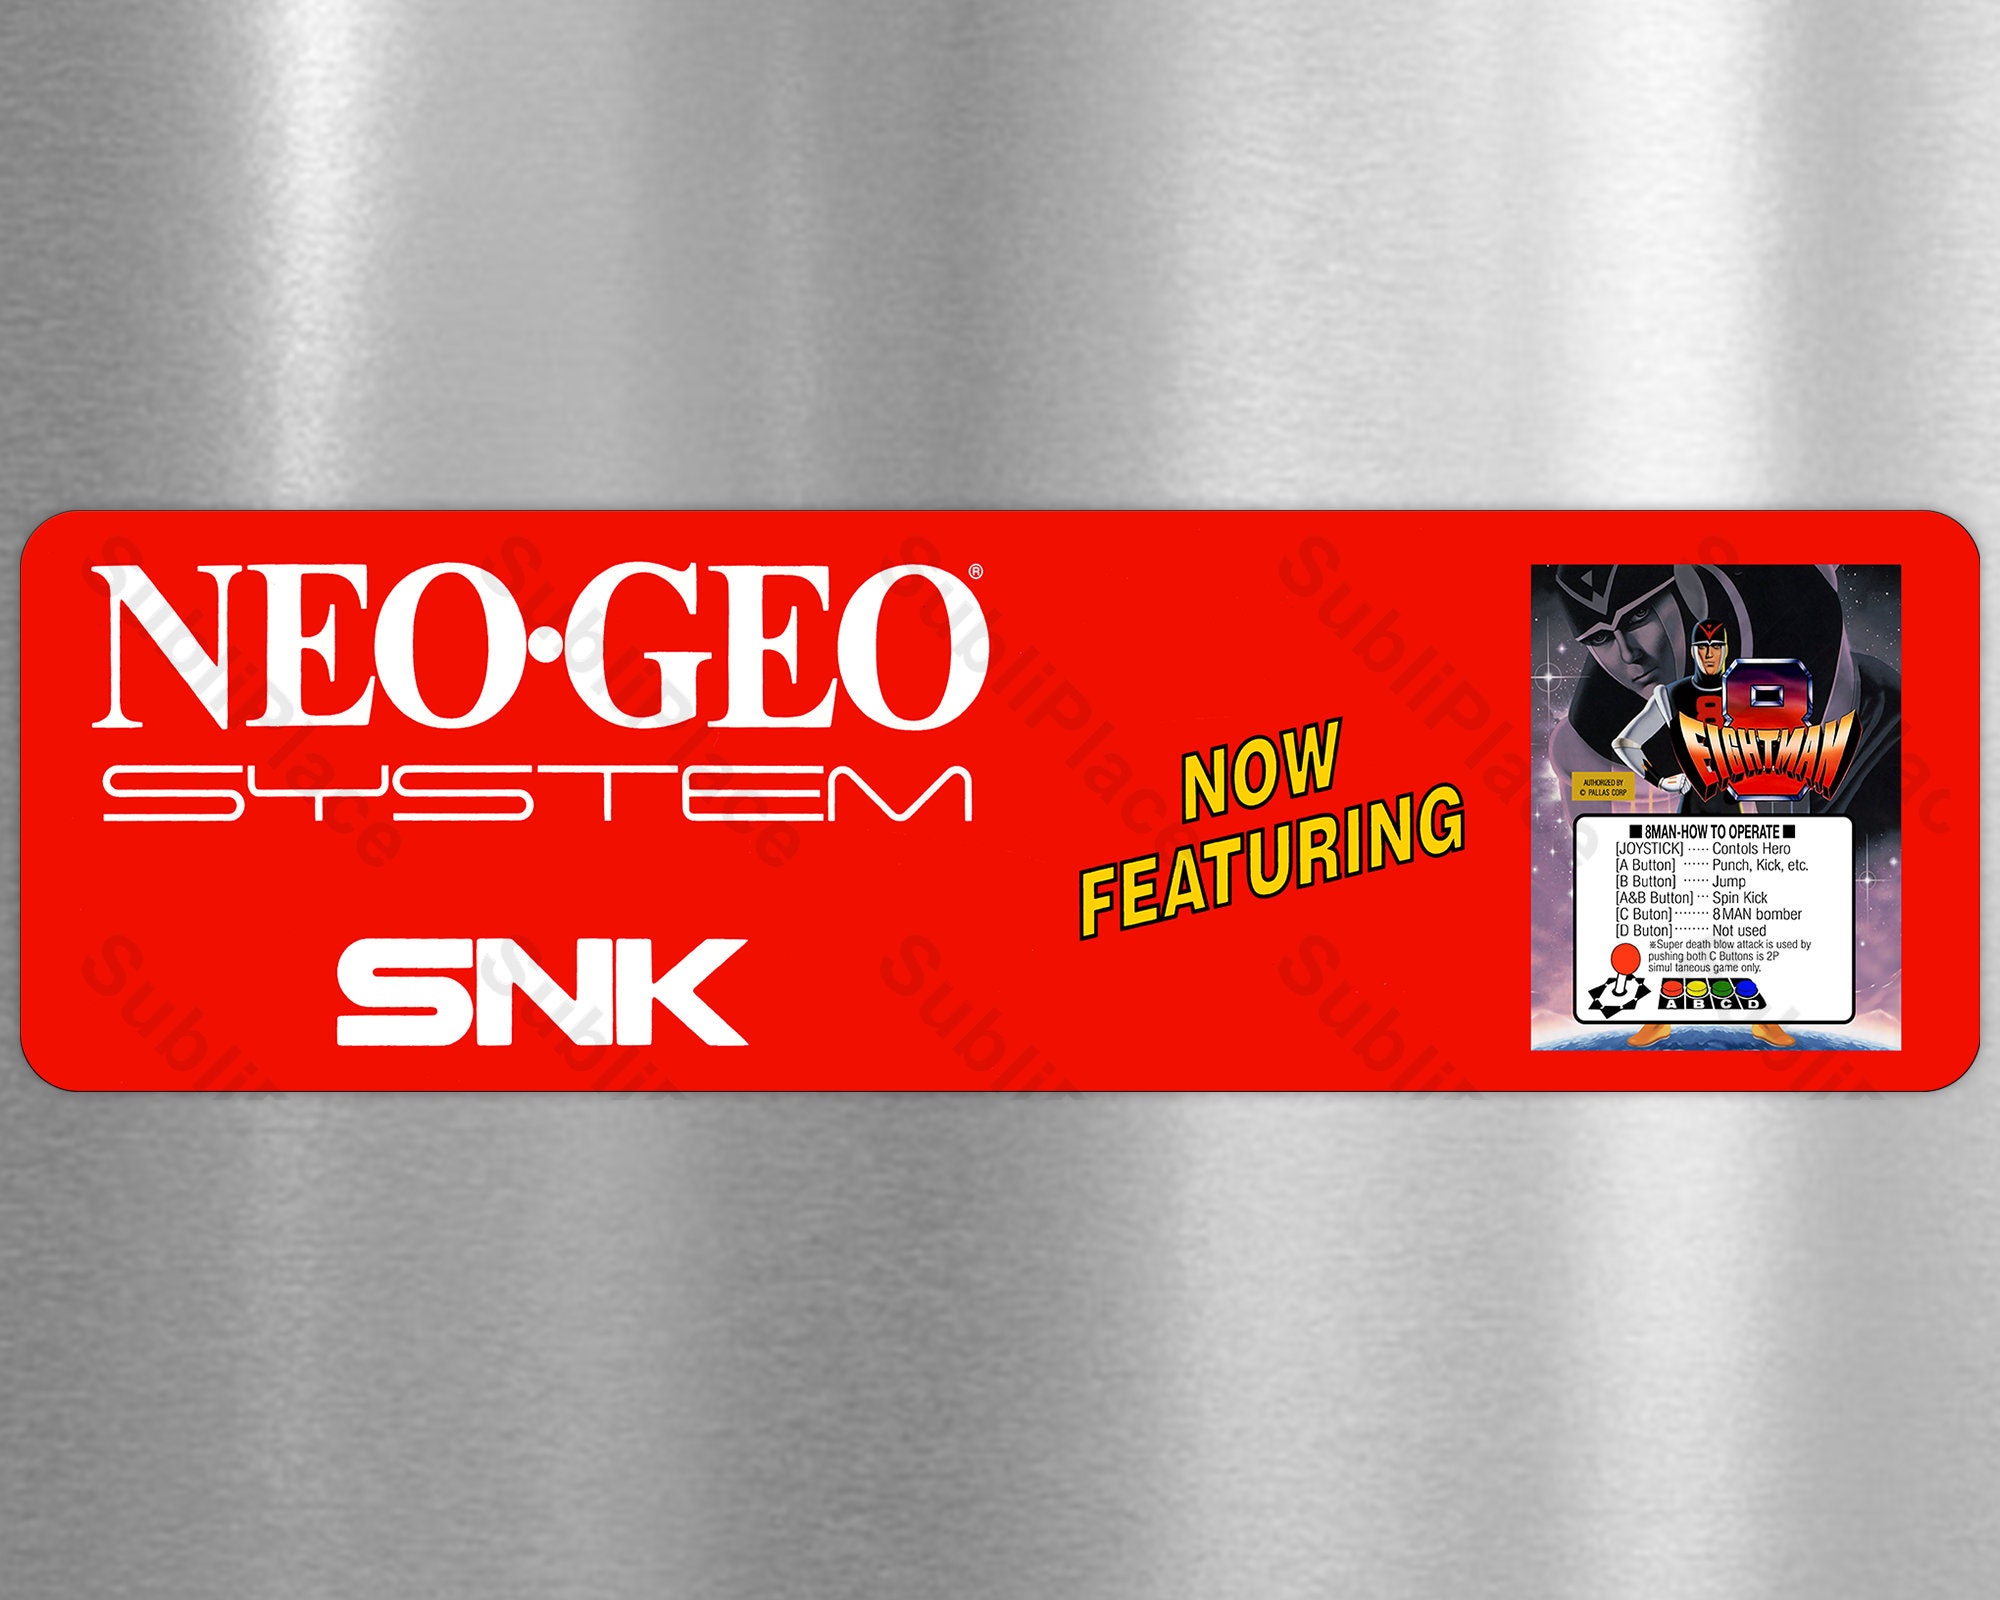 Crossed Swords 2 Pre-Orders Now Open for Neo Geo MVS! 